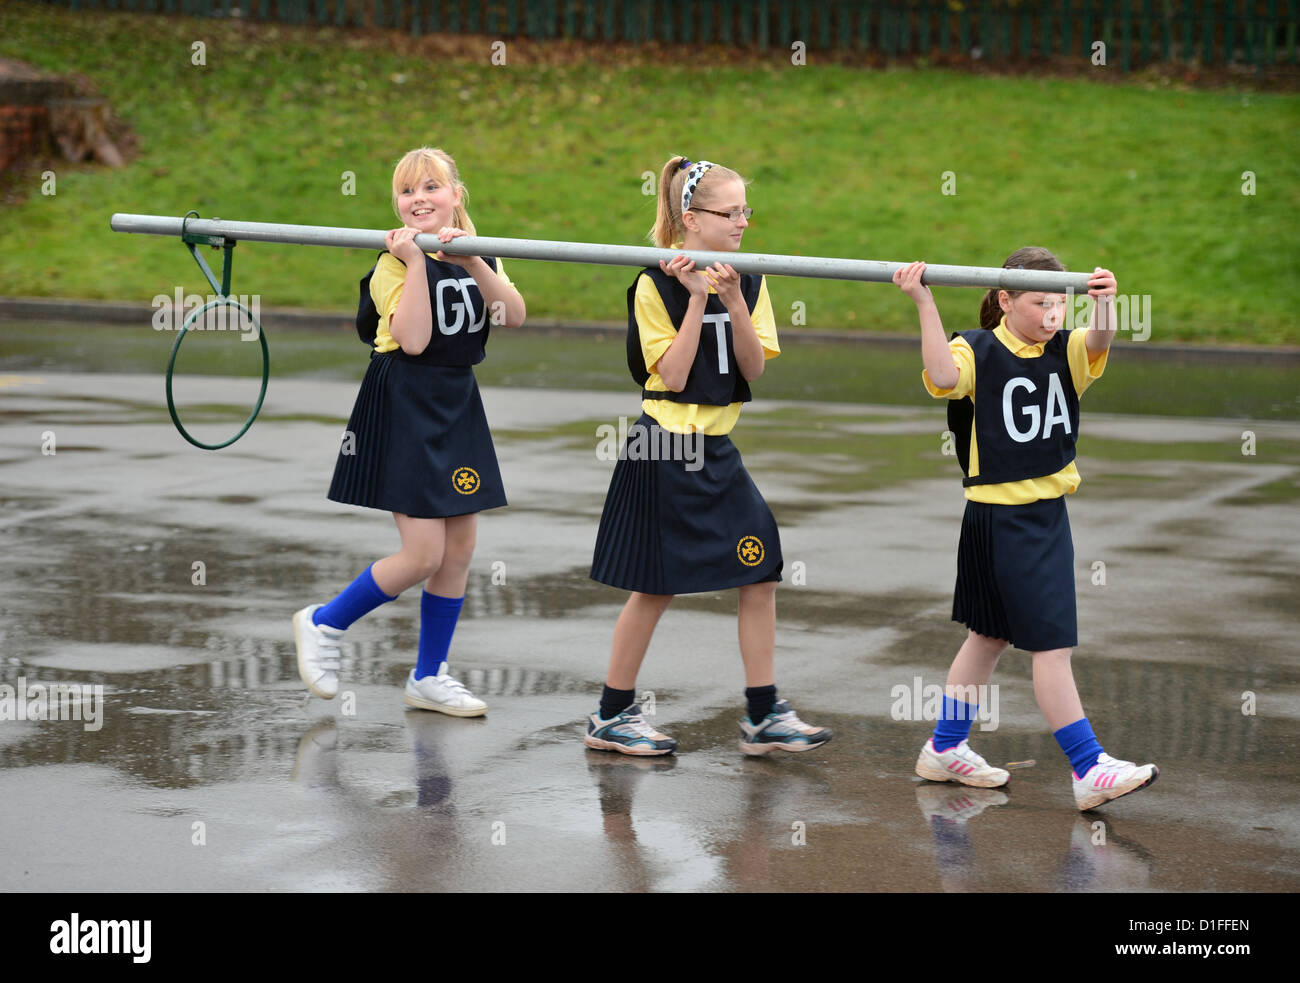 Les écoliers portant un objectif de netball à Notre Dame et St Werburgh's Catholic Primary School à Newcastle-under-Lyme, Staffordshi Banque D'Images